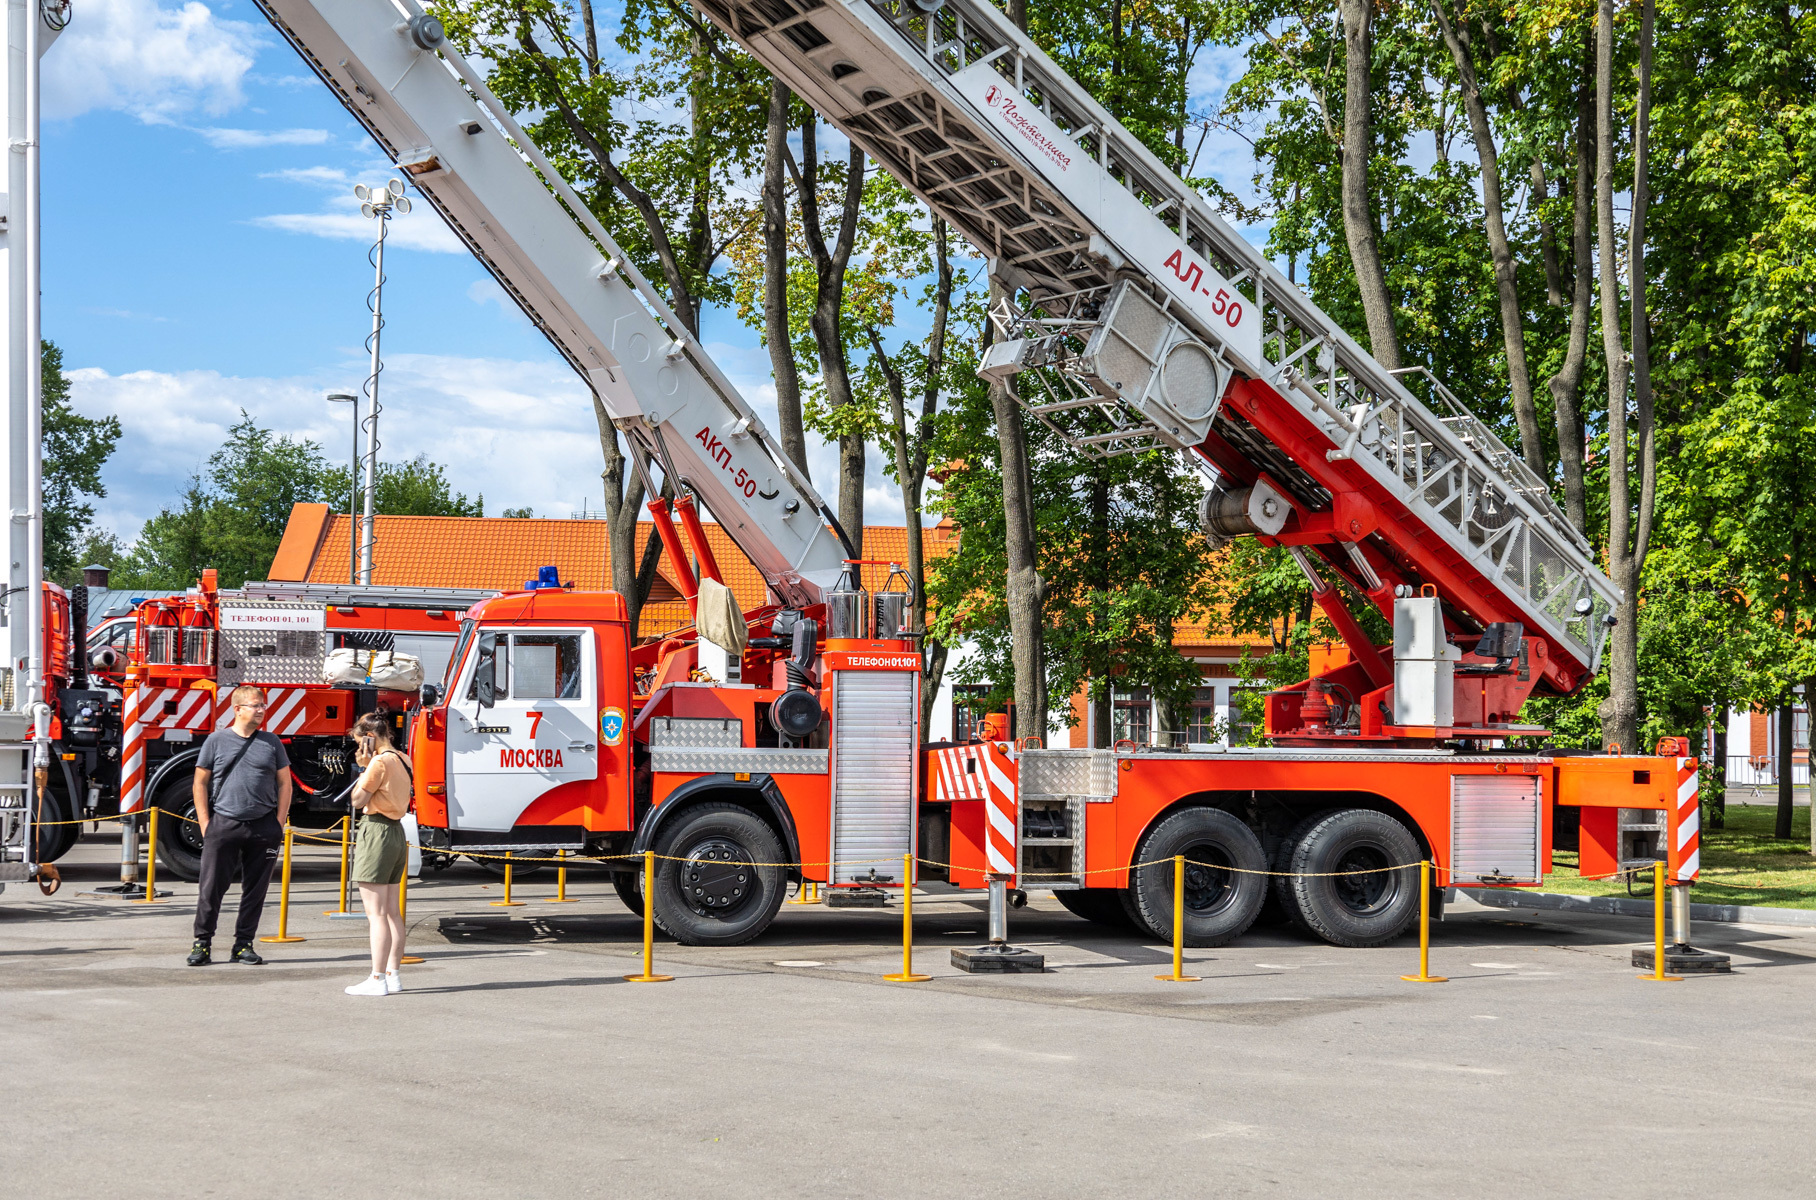 Где в Москве посмотреть на редкие пожарные машины?